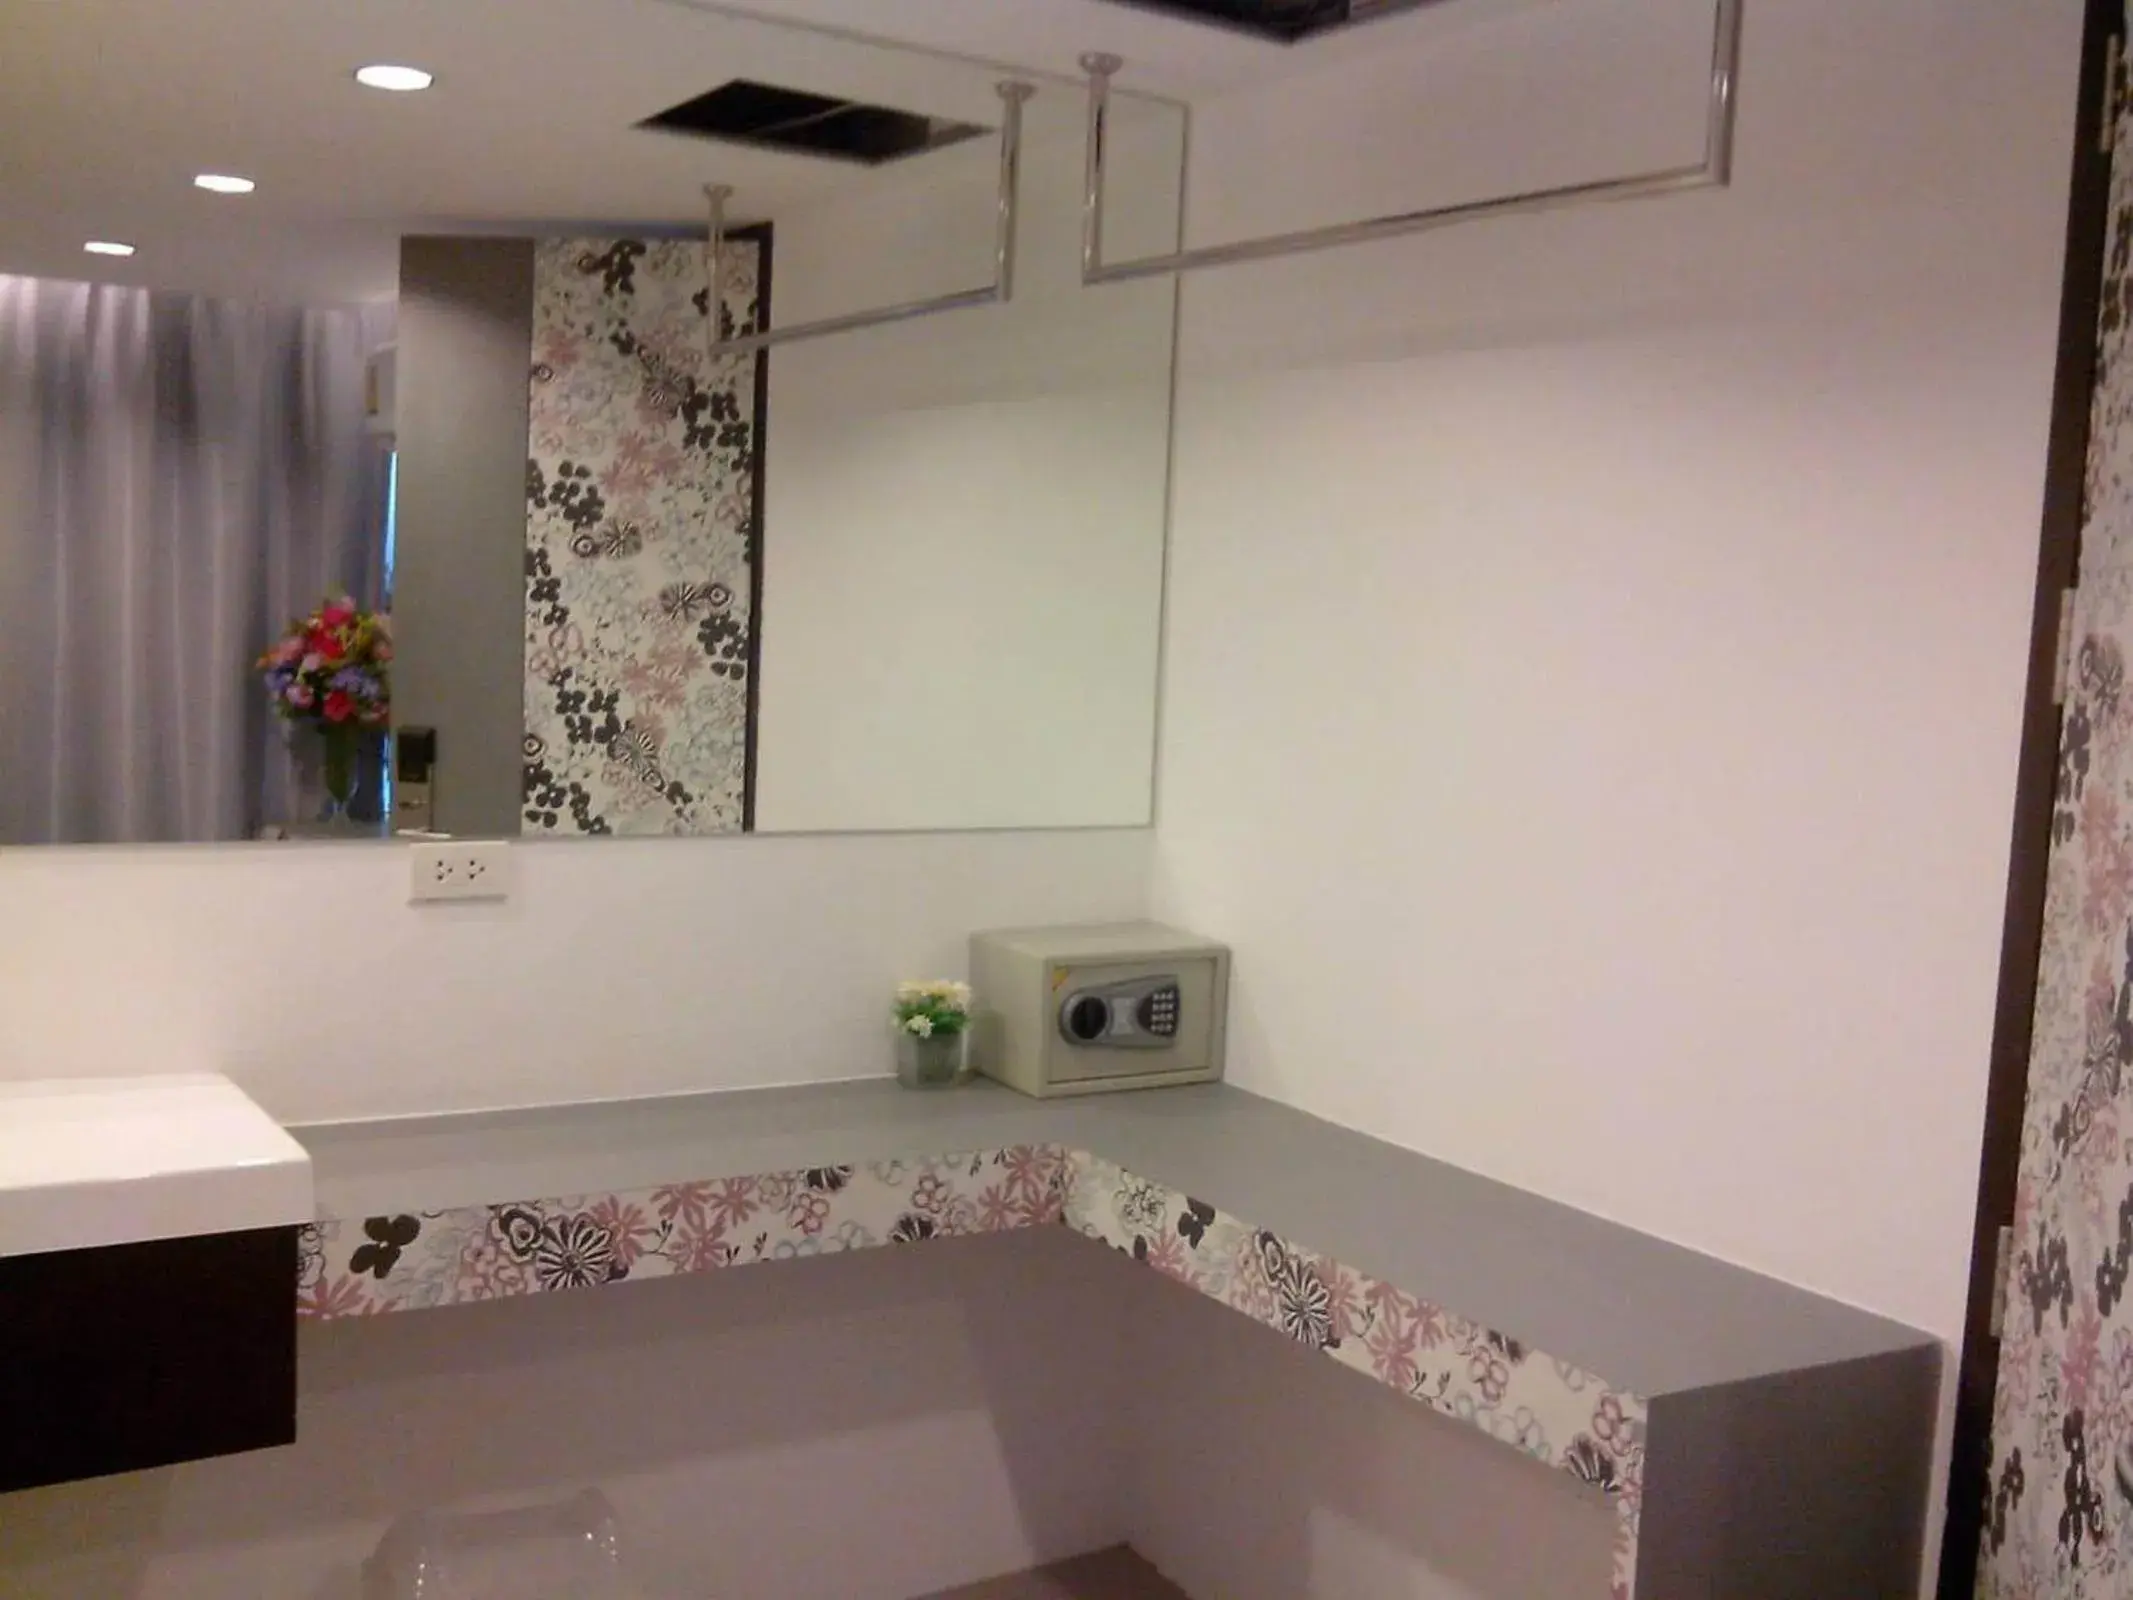 Decorative detail, Bathroom in Nantra Ploenchit Hotel